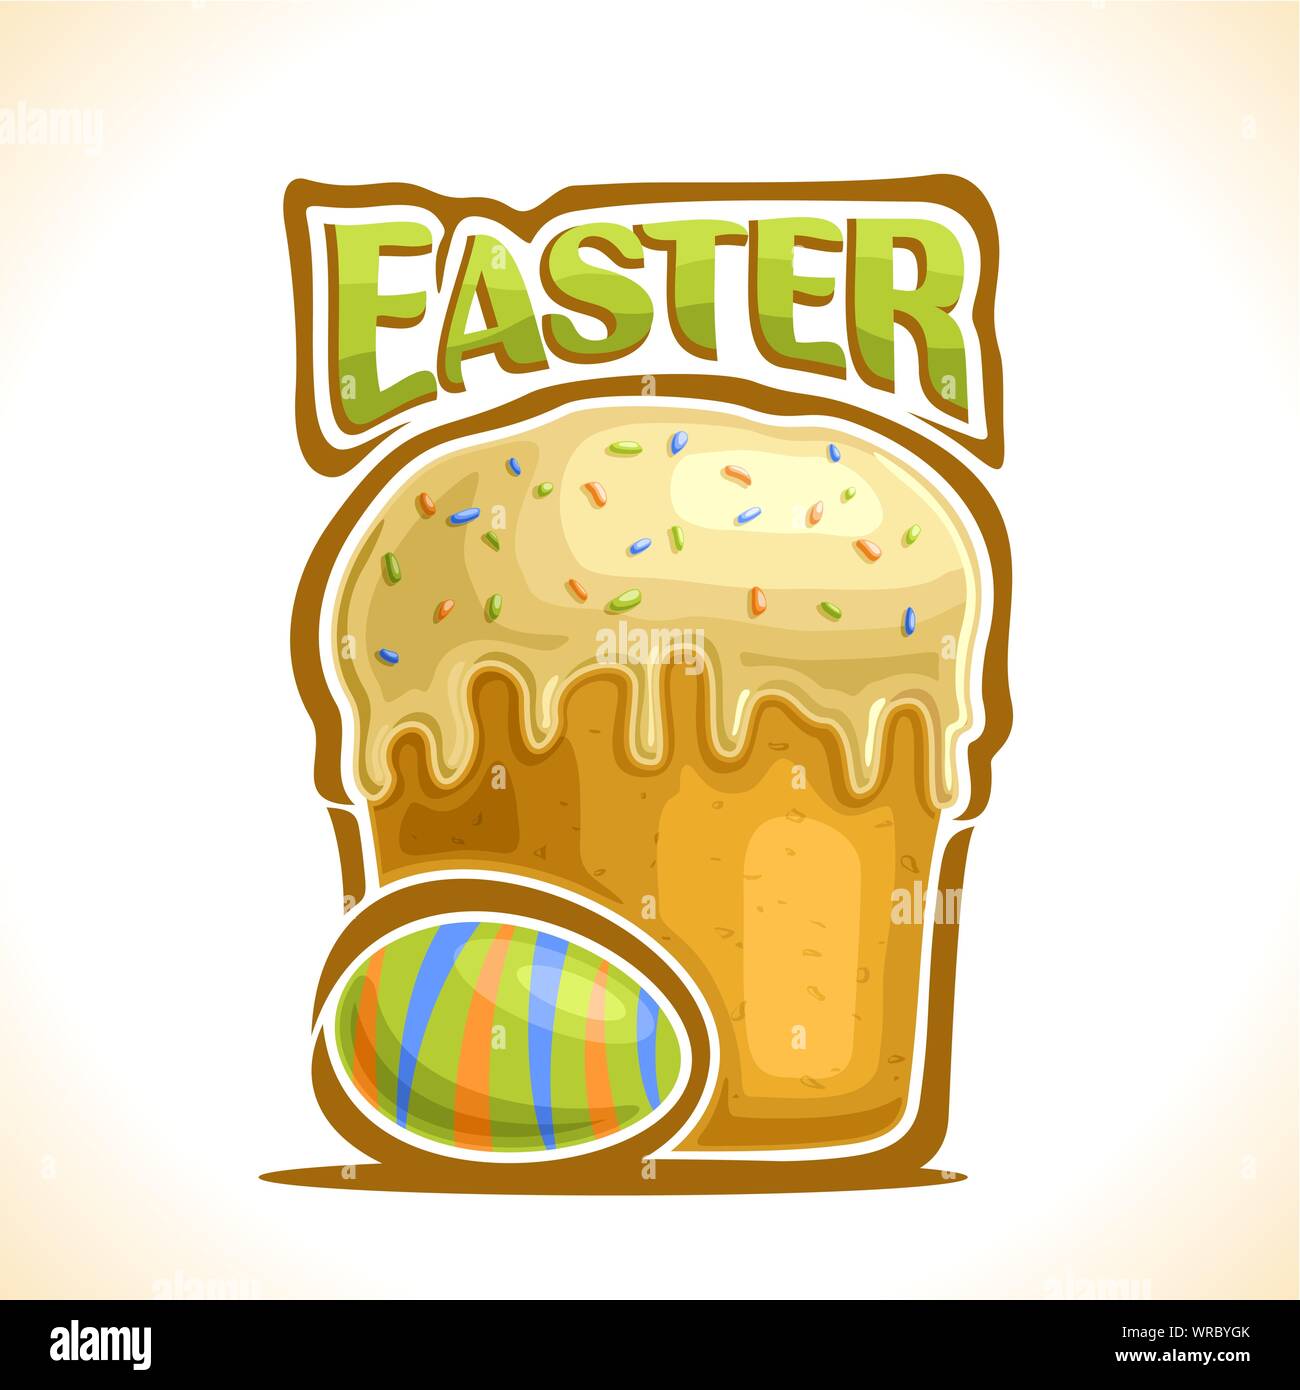 Illustrazione Vettoriale per vacanze di Pasqua: il logo con strisce colorate uovo di pollo e torte fatte in casa con flusso di smalto antigoccia crema. Illustrazione Vettoriale